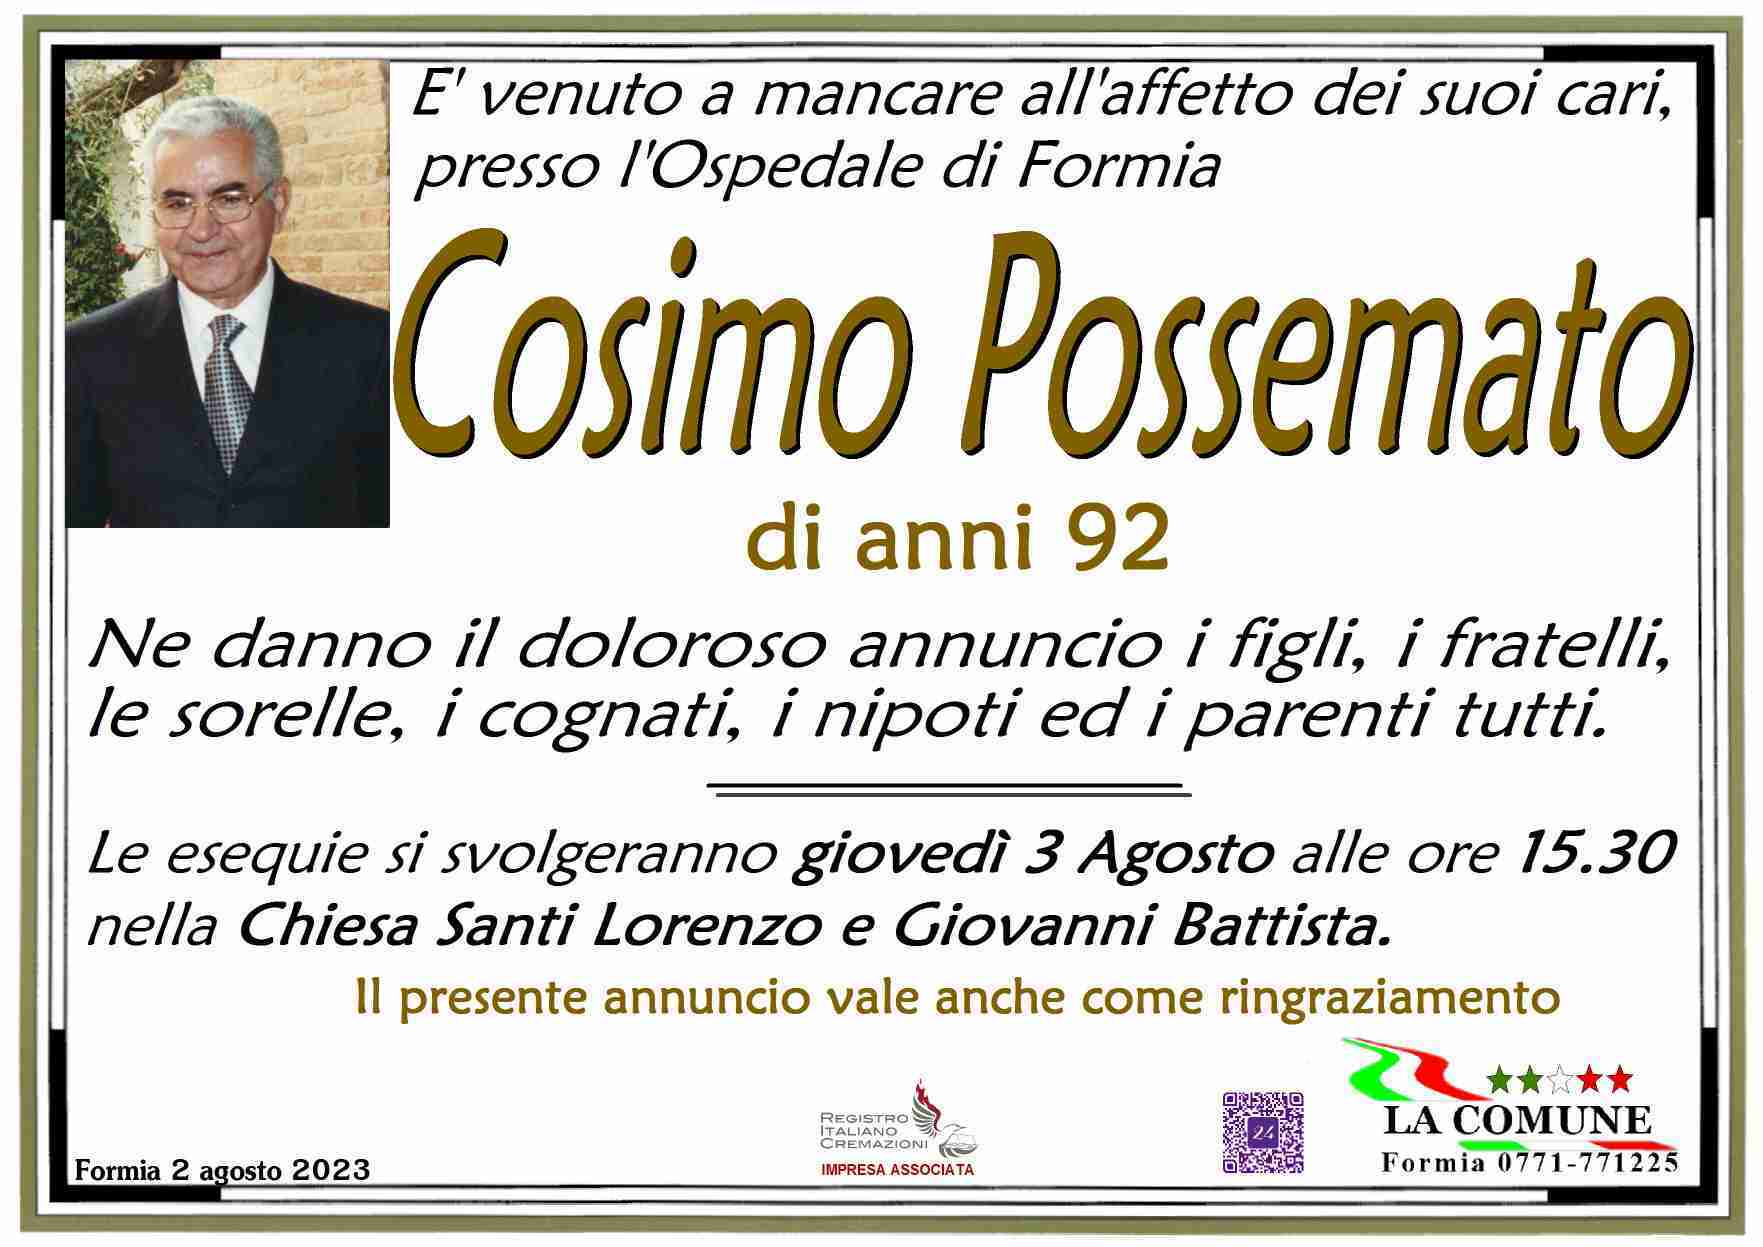 Cosimo Possemato